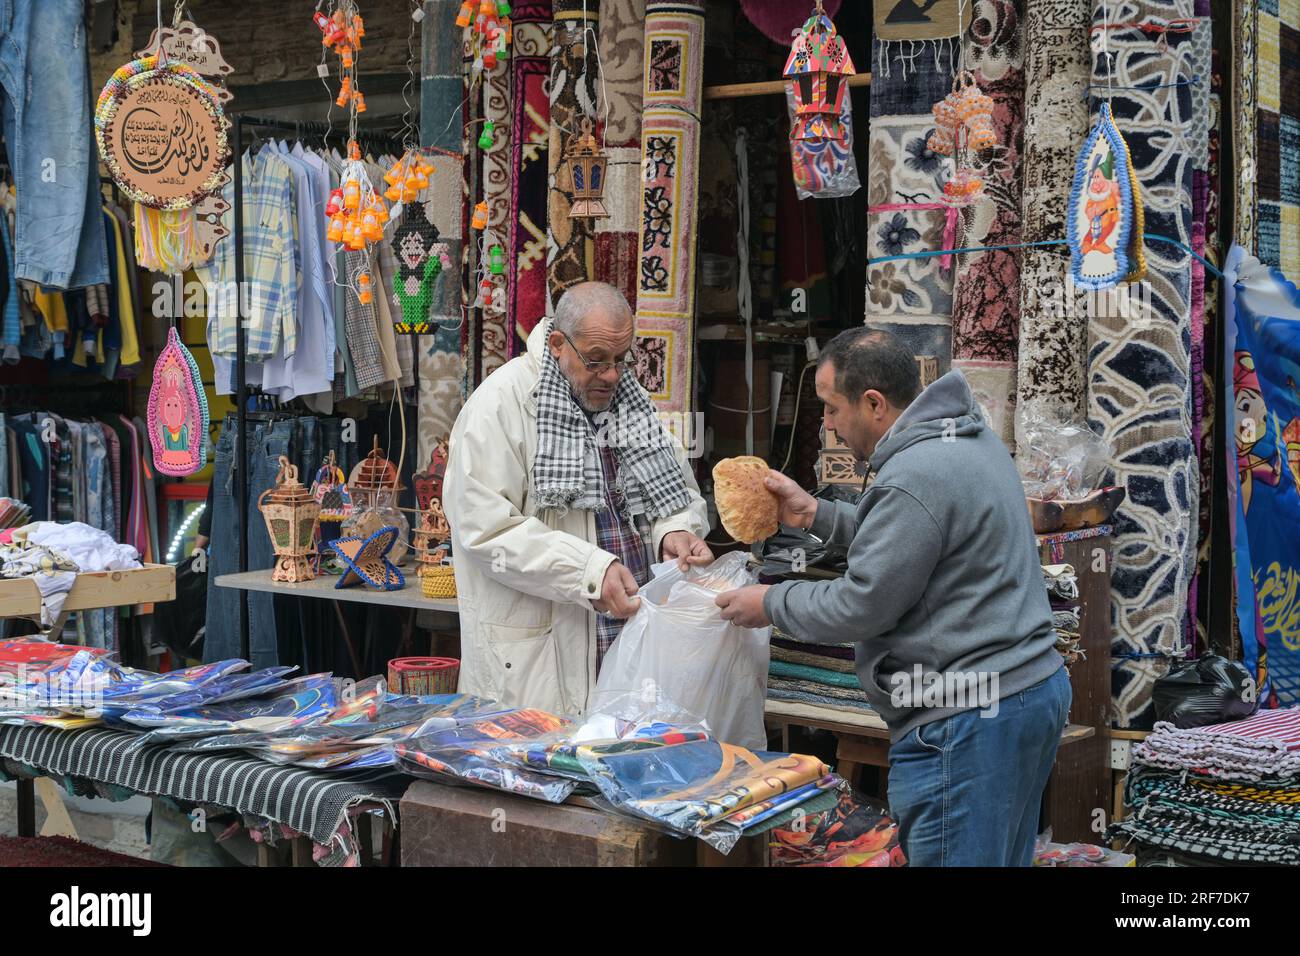 Straßenszene, Textilgeschäft, Teppiche, Männer, Brot, Khan el-Khalili Basar, Altstadt, Kairo, Ägypten Stock Photo